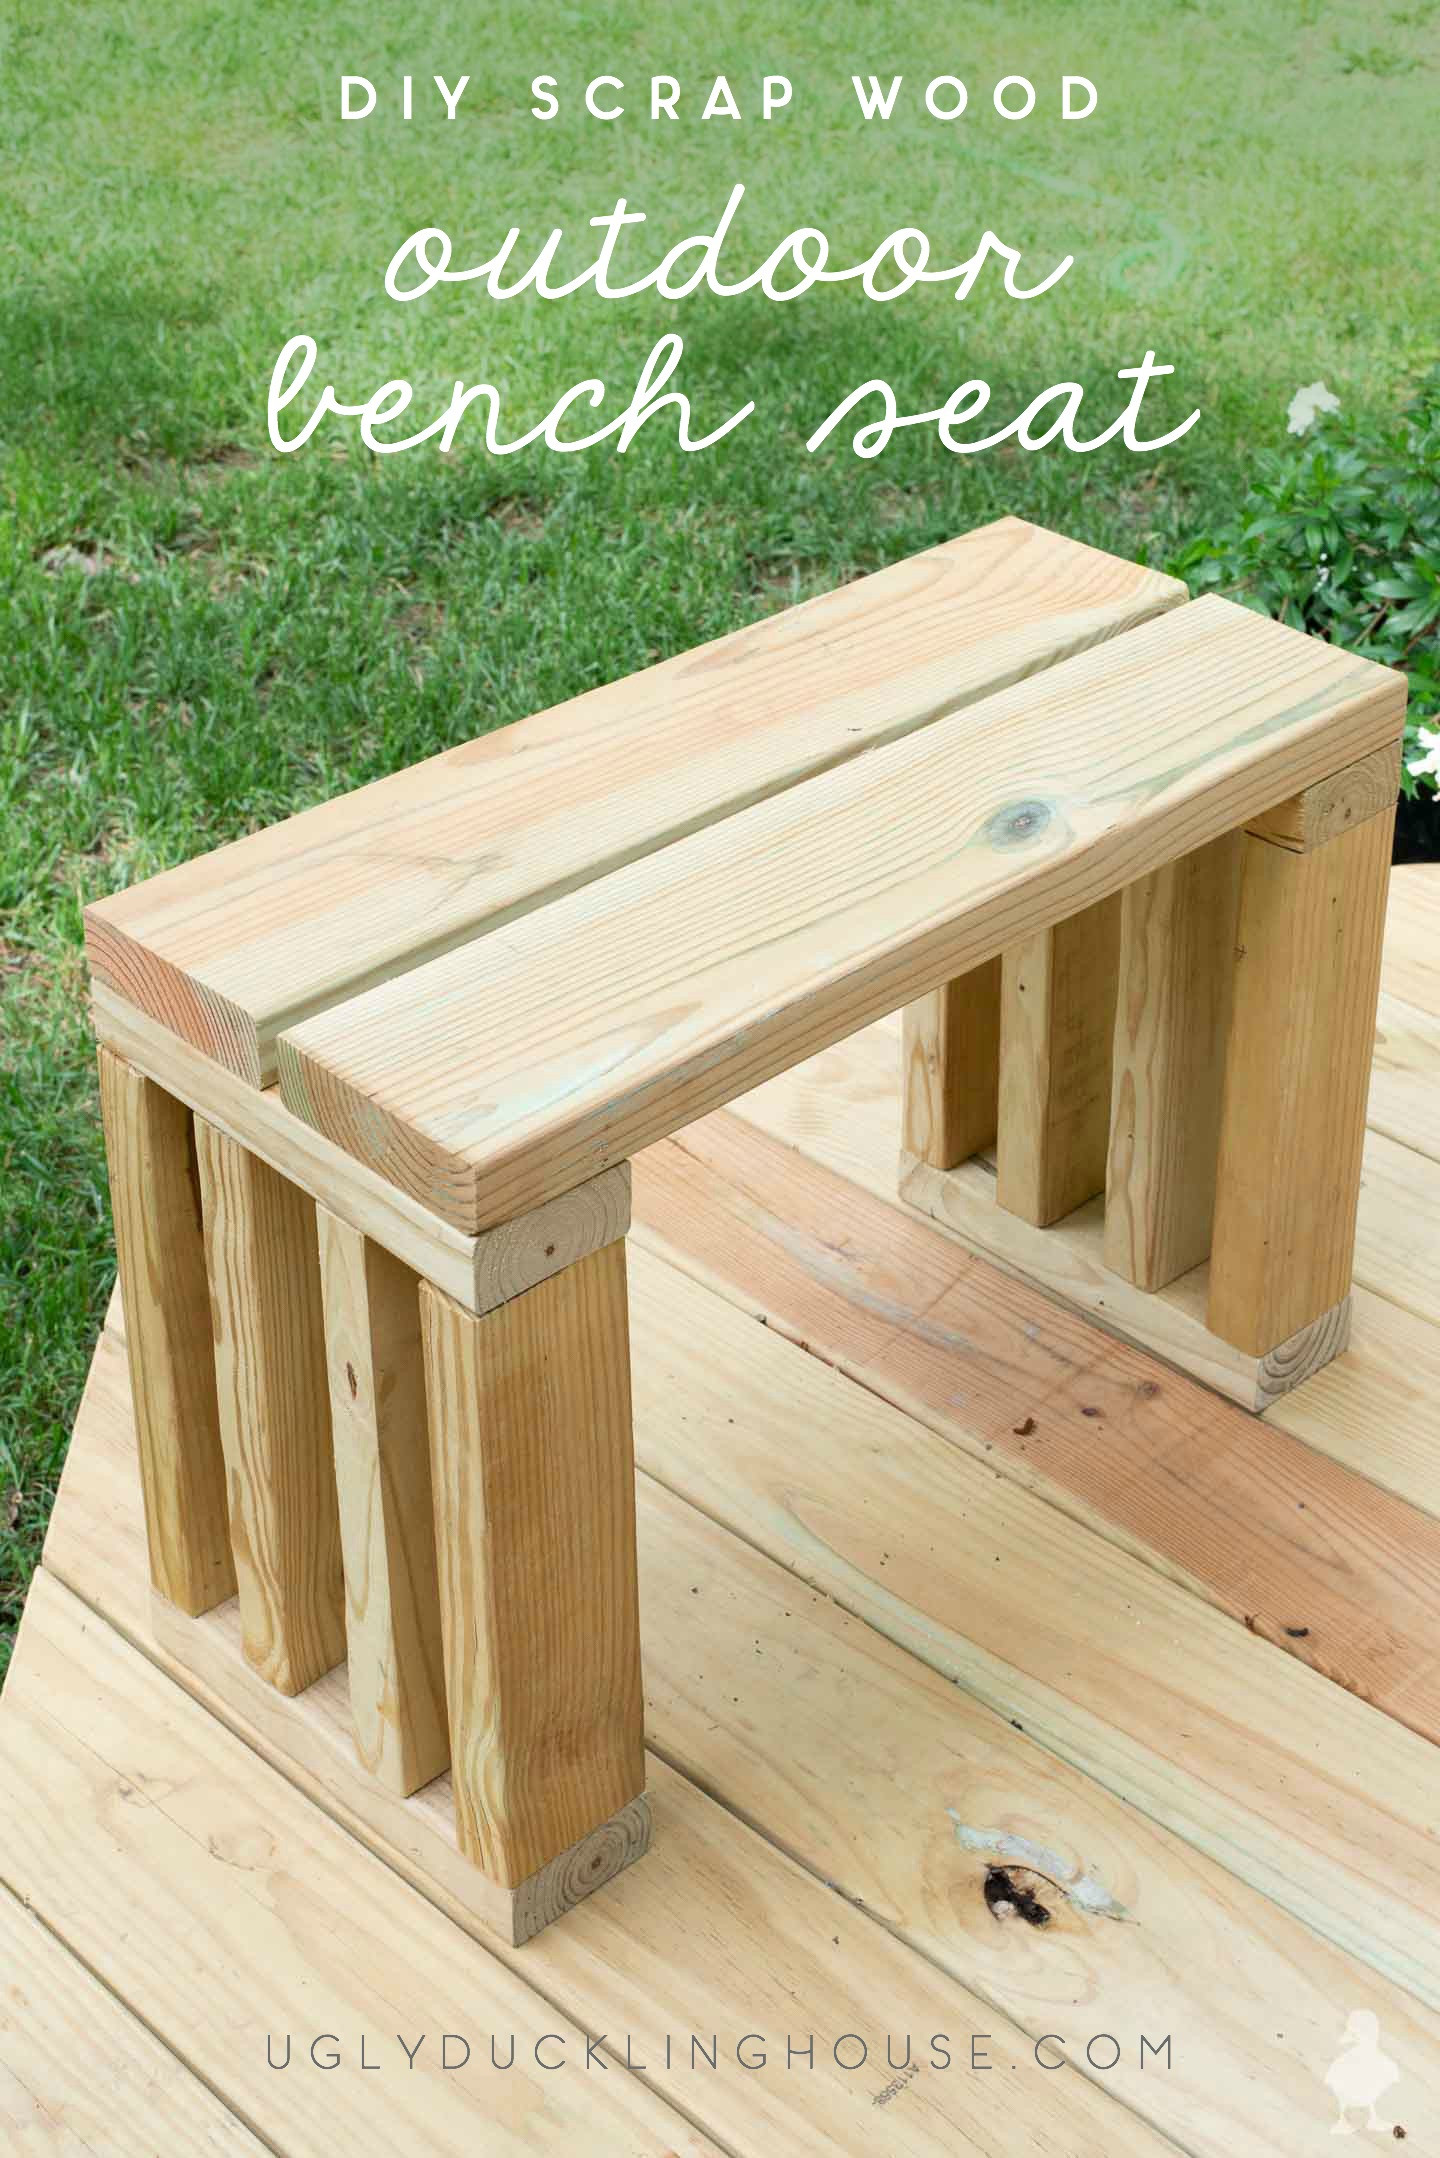 Outdoor Bench DIY
 Scrap Wood Outdoor Bench Seat